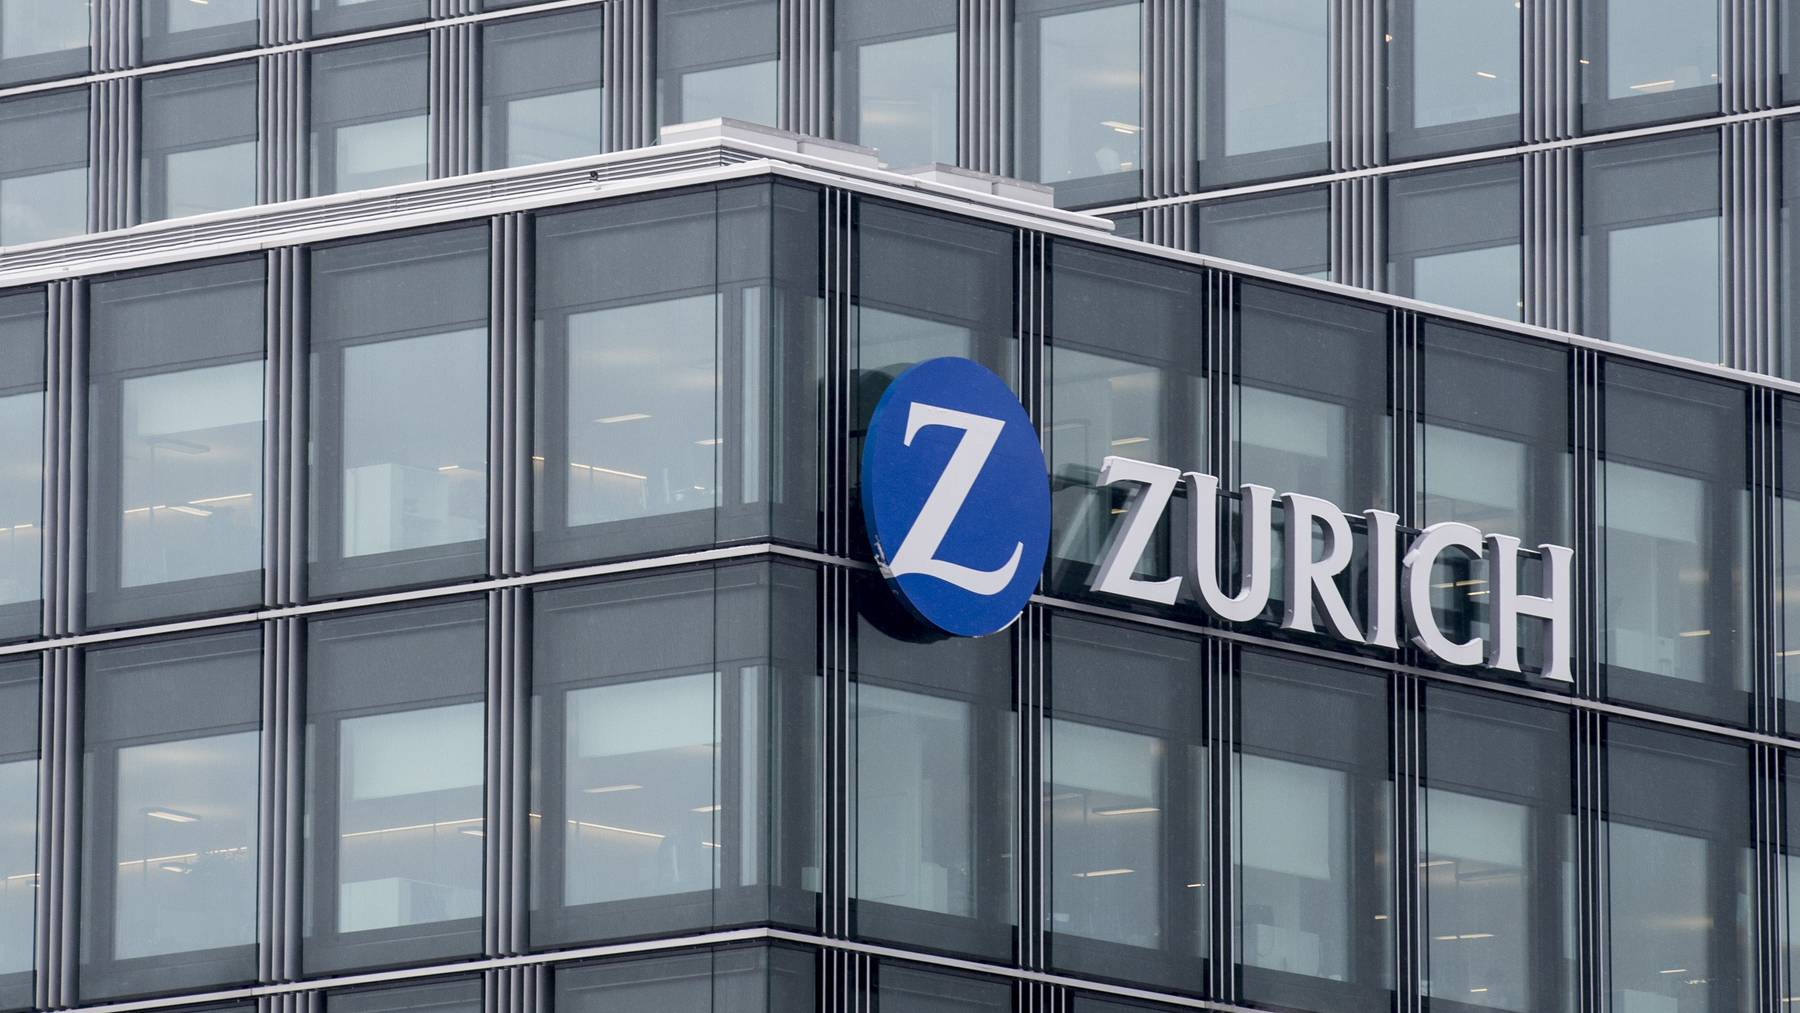 Die Zurich Versicherung will offenbar weiter in den US-Amerikanischen Markt vorstossen.